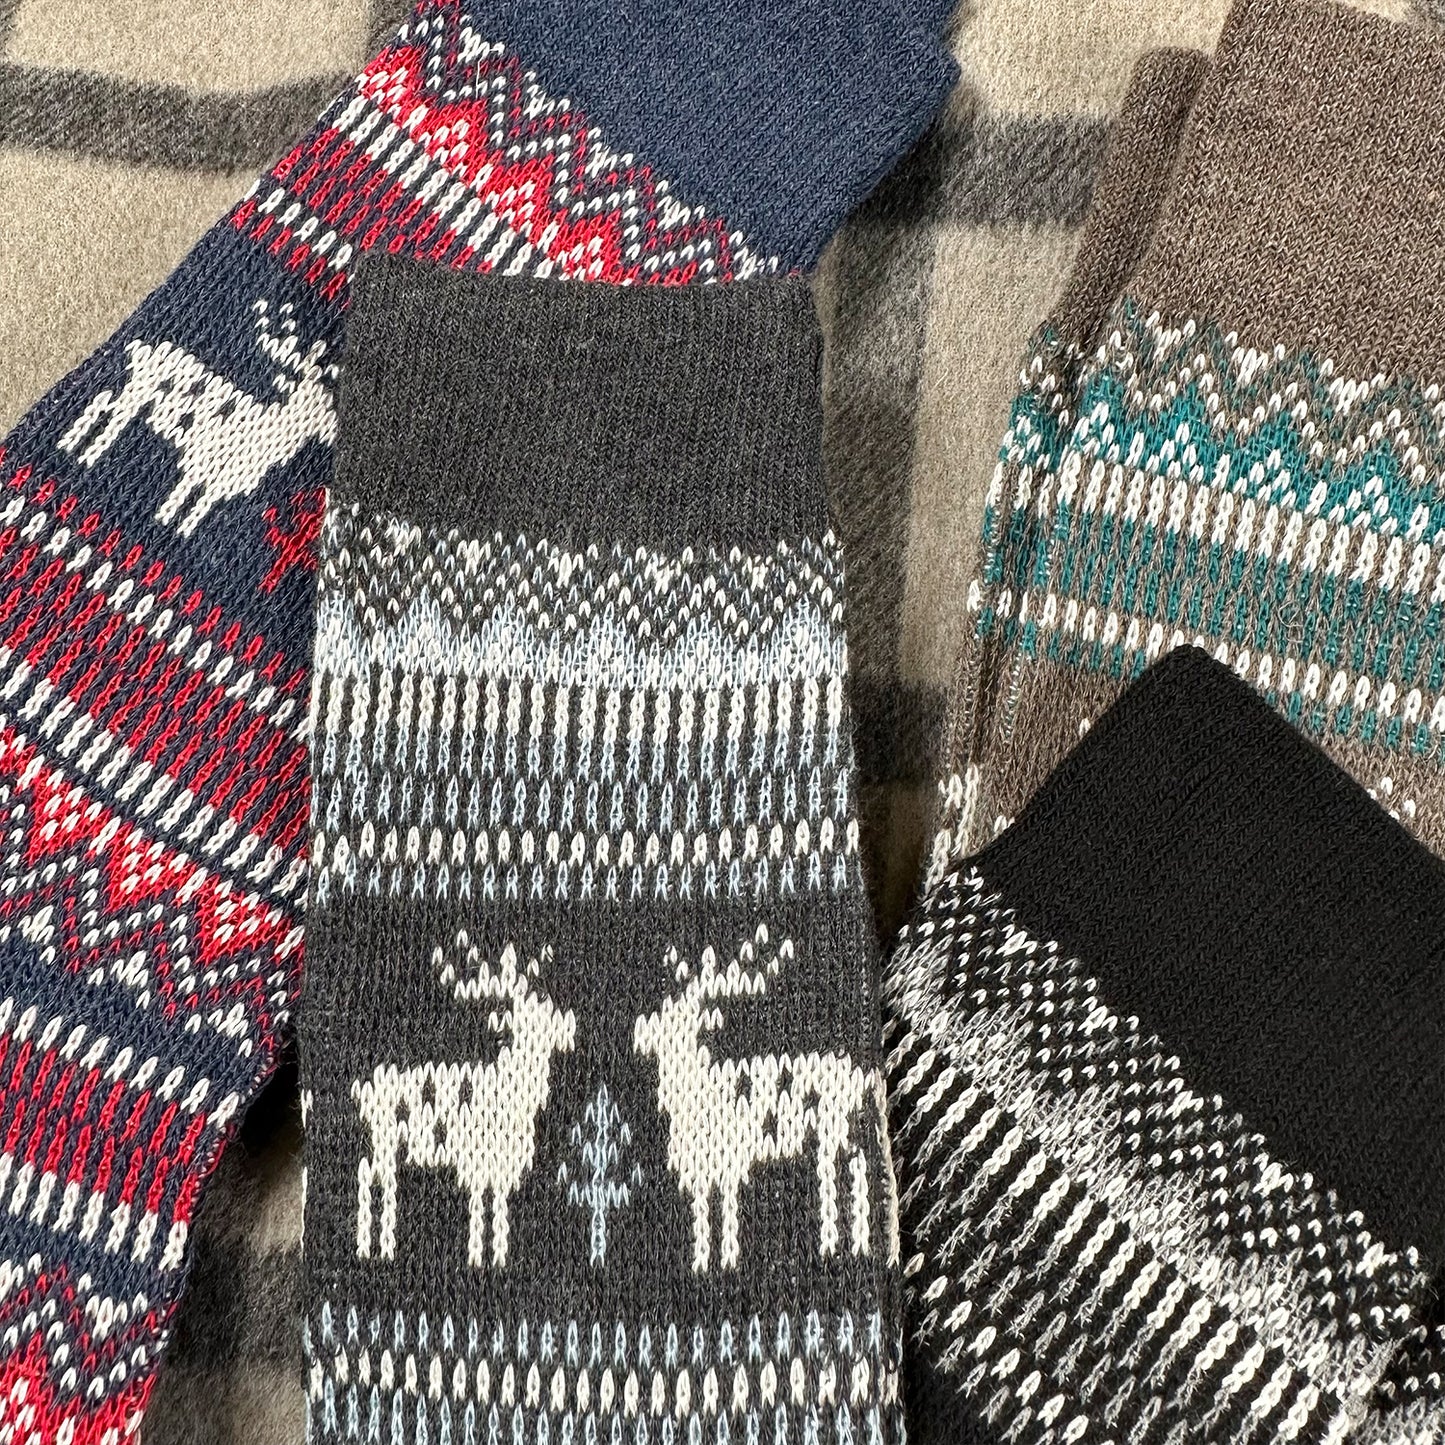 Men's Crew Deer Jacquard Socks